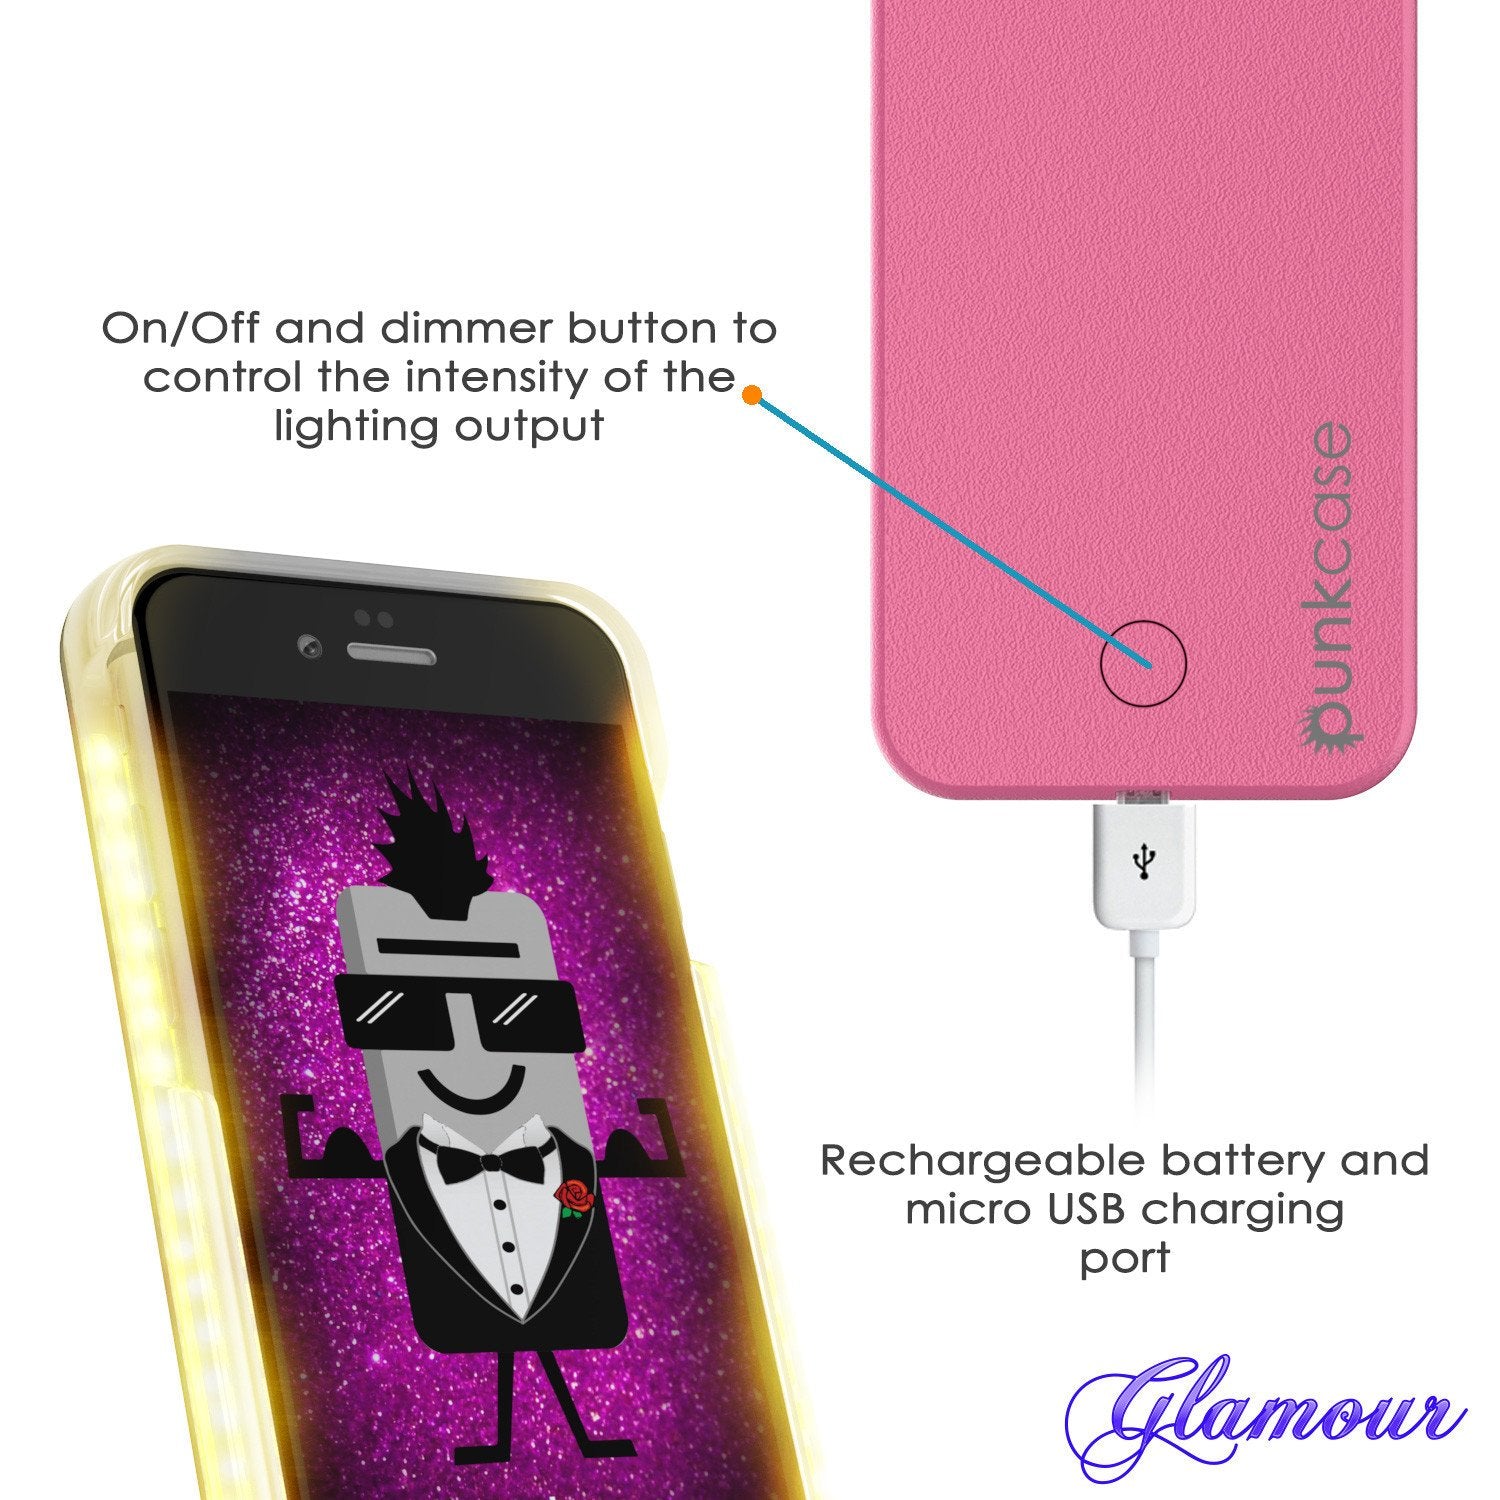 iPhone 6/6S Punkcase LED Light Case Light Illuminated Case, Pink  W/  Battery Power Bank - PunkCase NZ